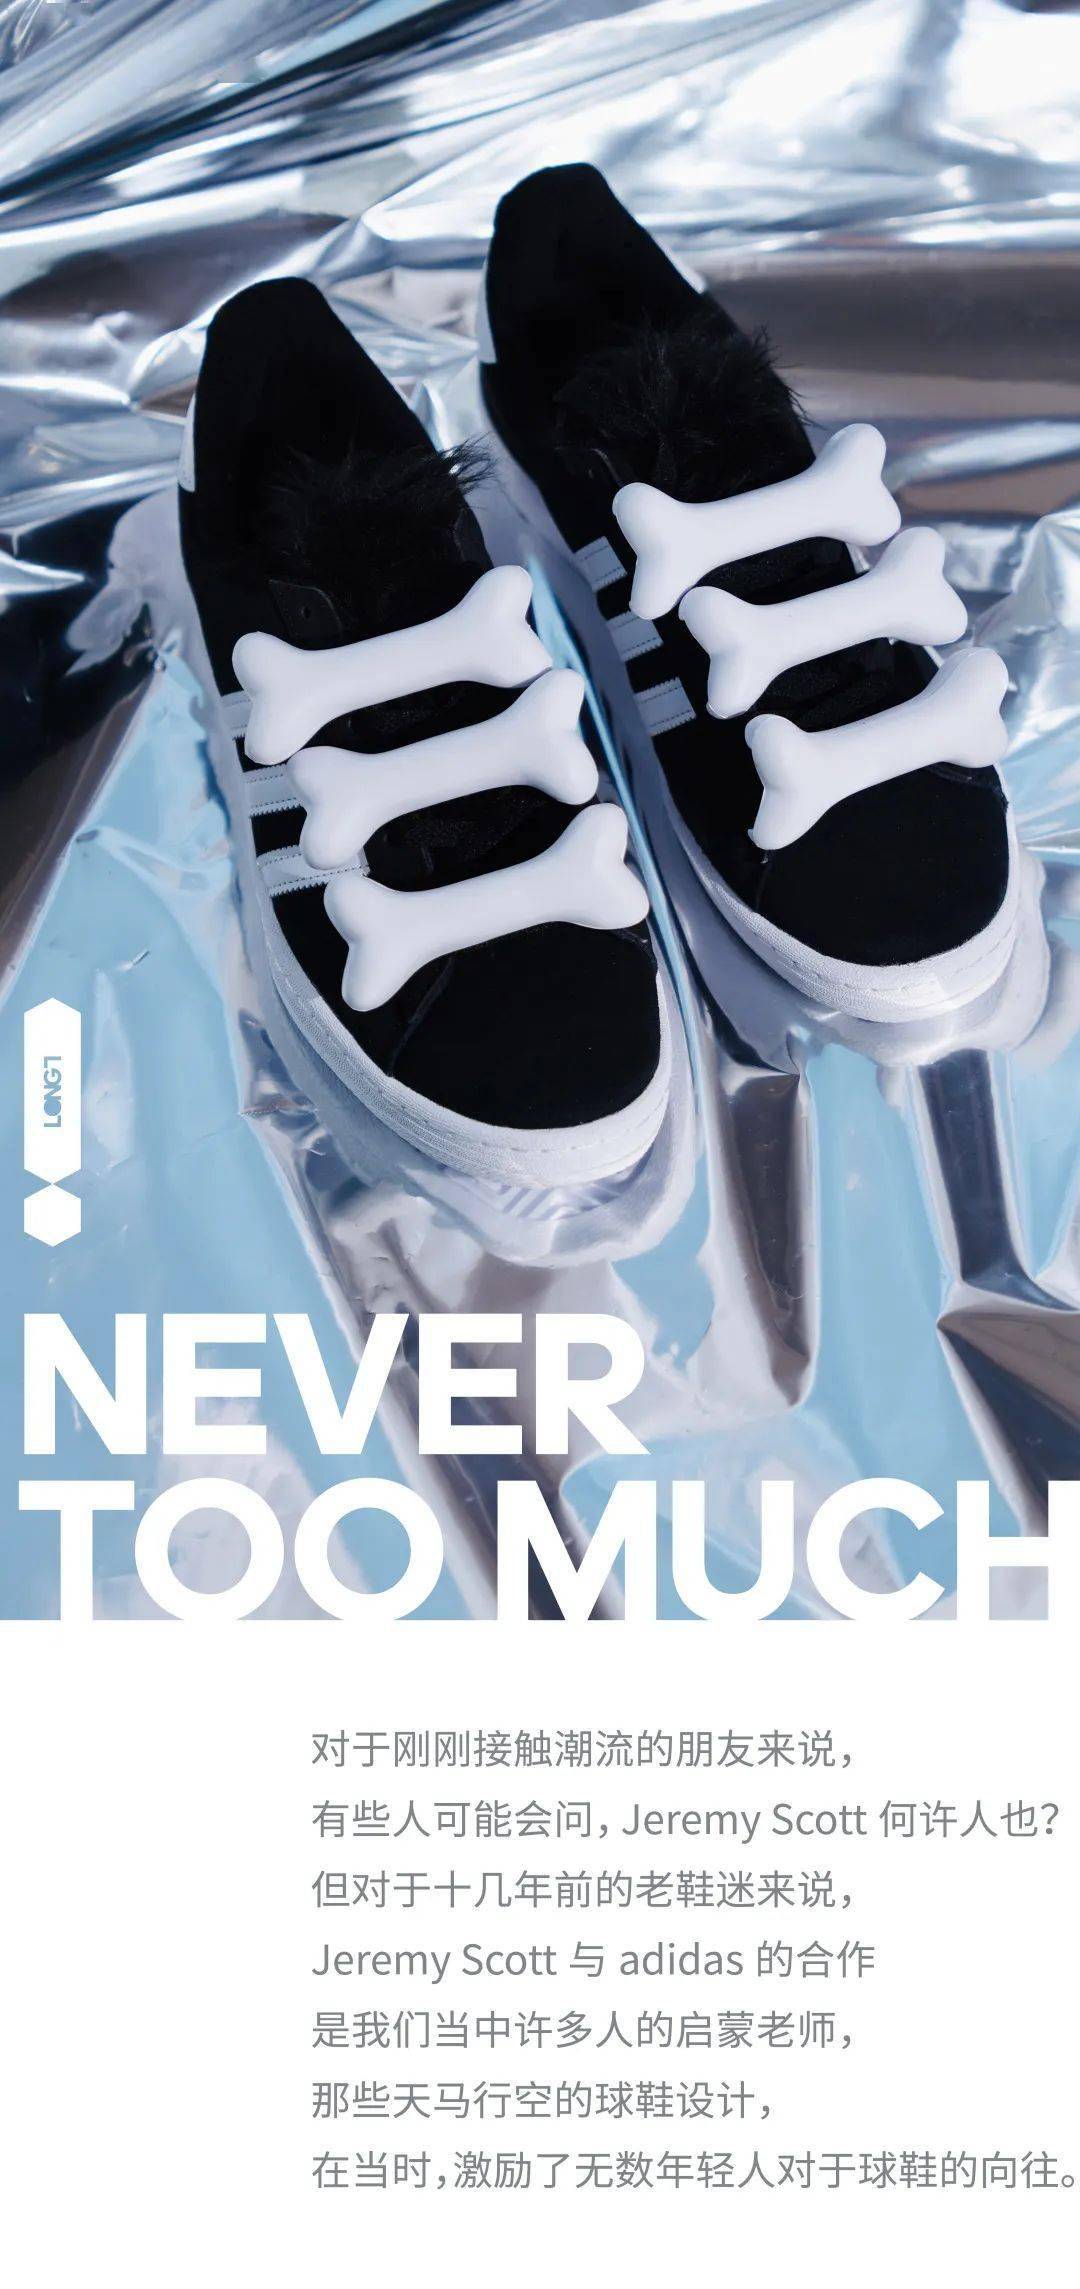 Jeremy Scott x adidas又出新鞋｜亖去的回忆突然开始攻击我_手机搜狐网